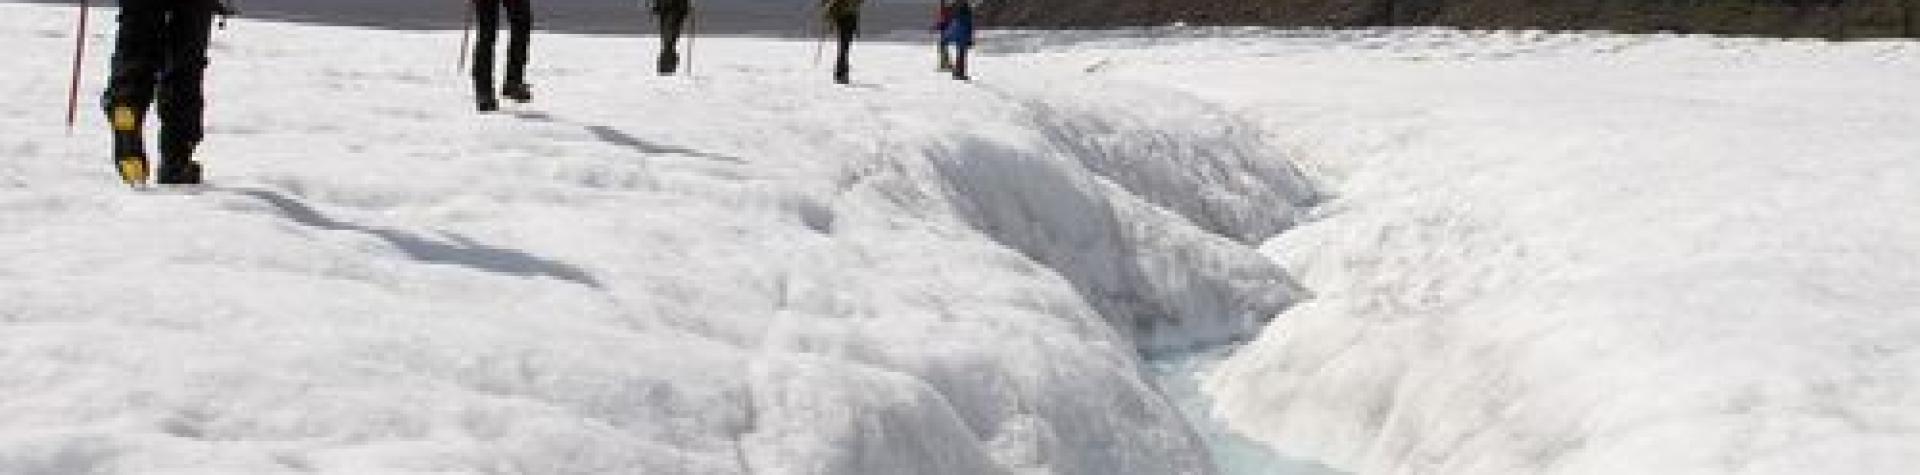 Isbreeventyr - vandring på isbreen (08:30/9-10 tim)